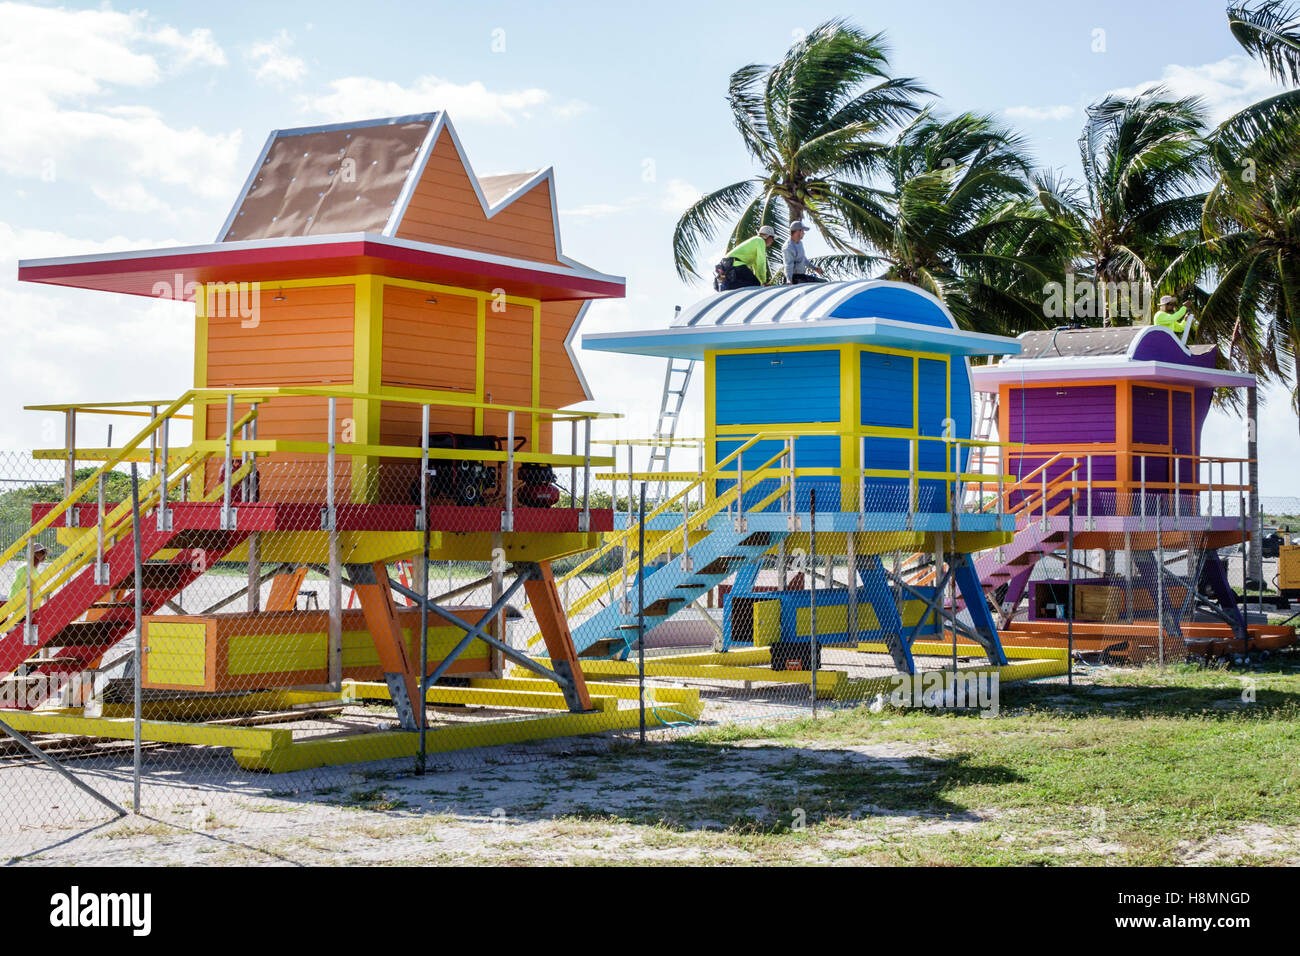 Miami Beach Florida, neue Rettungsschwimmerstationen, Besucher reisen Reise Tour Tourismus Wahrzeichen Kultur Kultur Kultur, Urlaub Gruppe Menschen pe Stockfoto